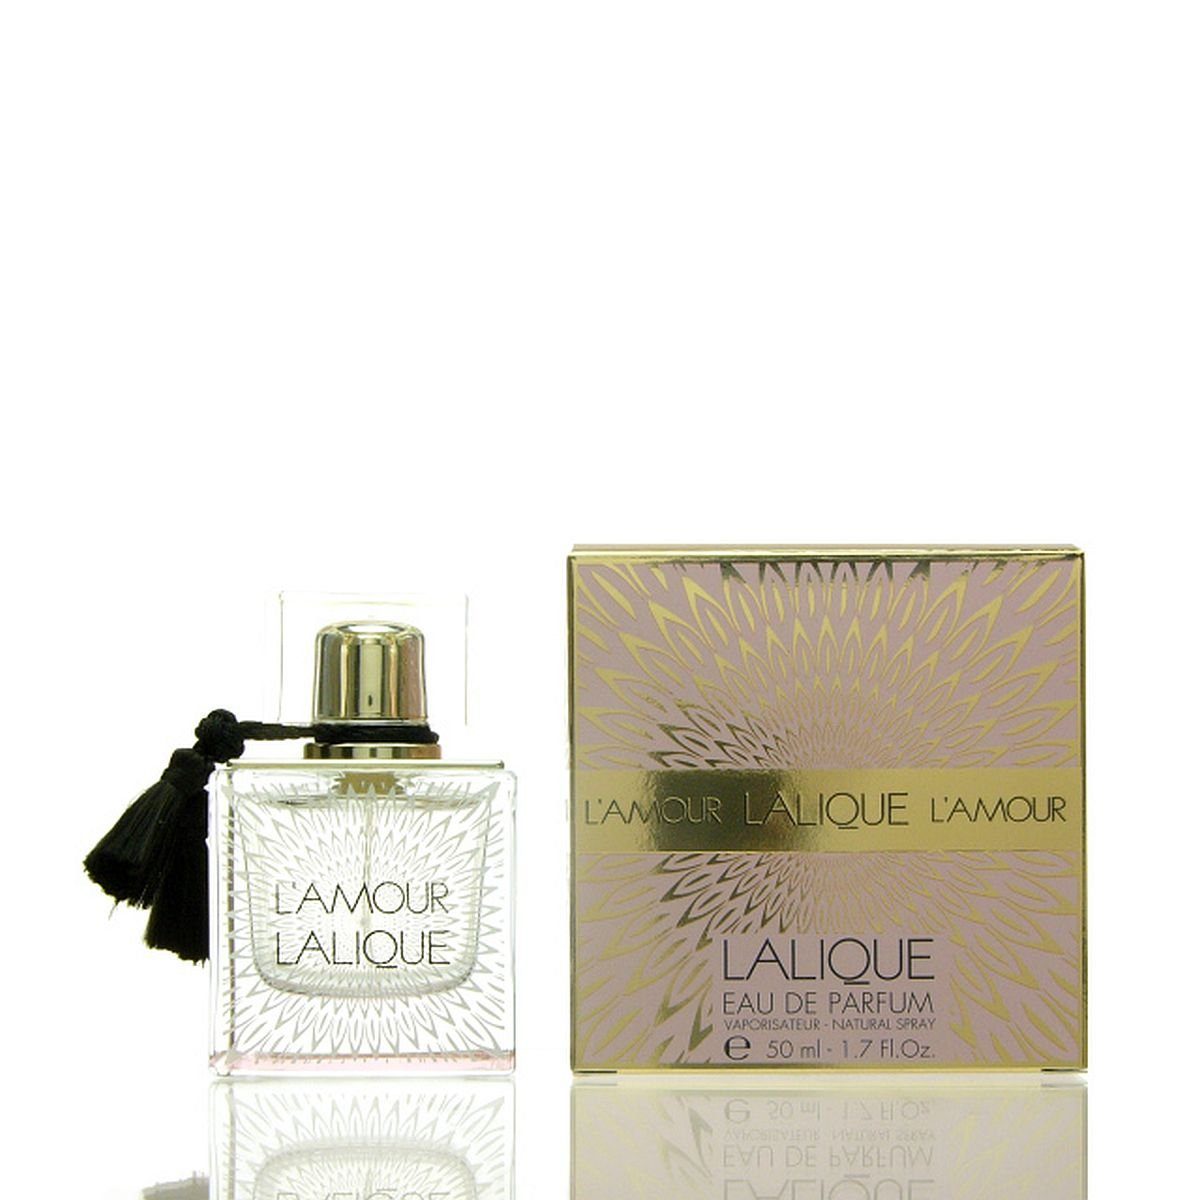 ml de Parfum de Parfum 50 Eau Lalique Eau L'Amour Lalique